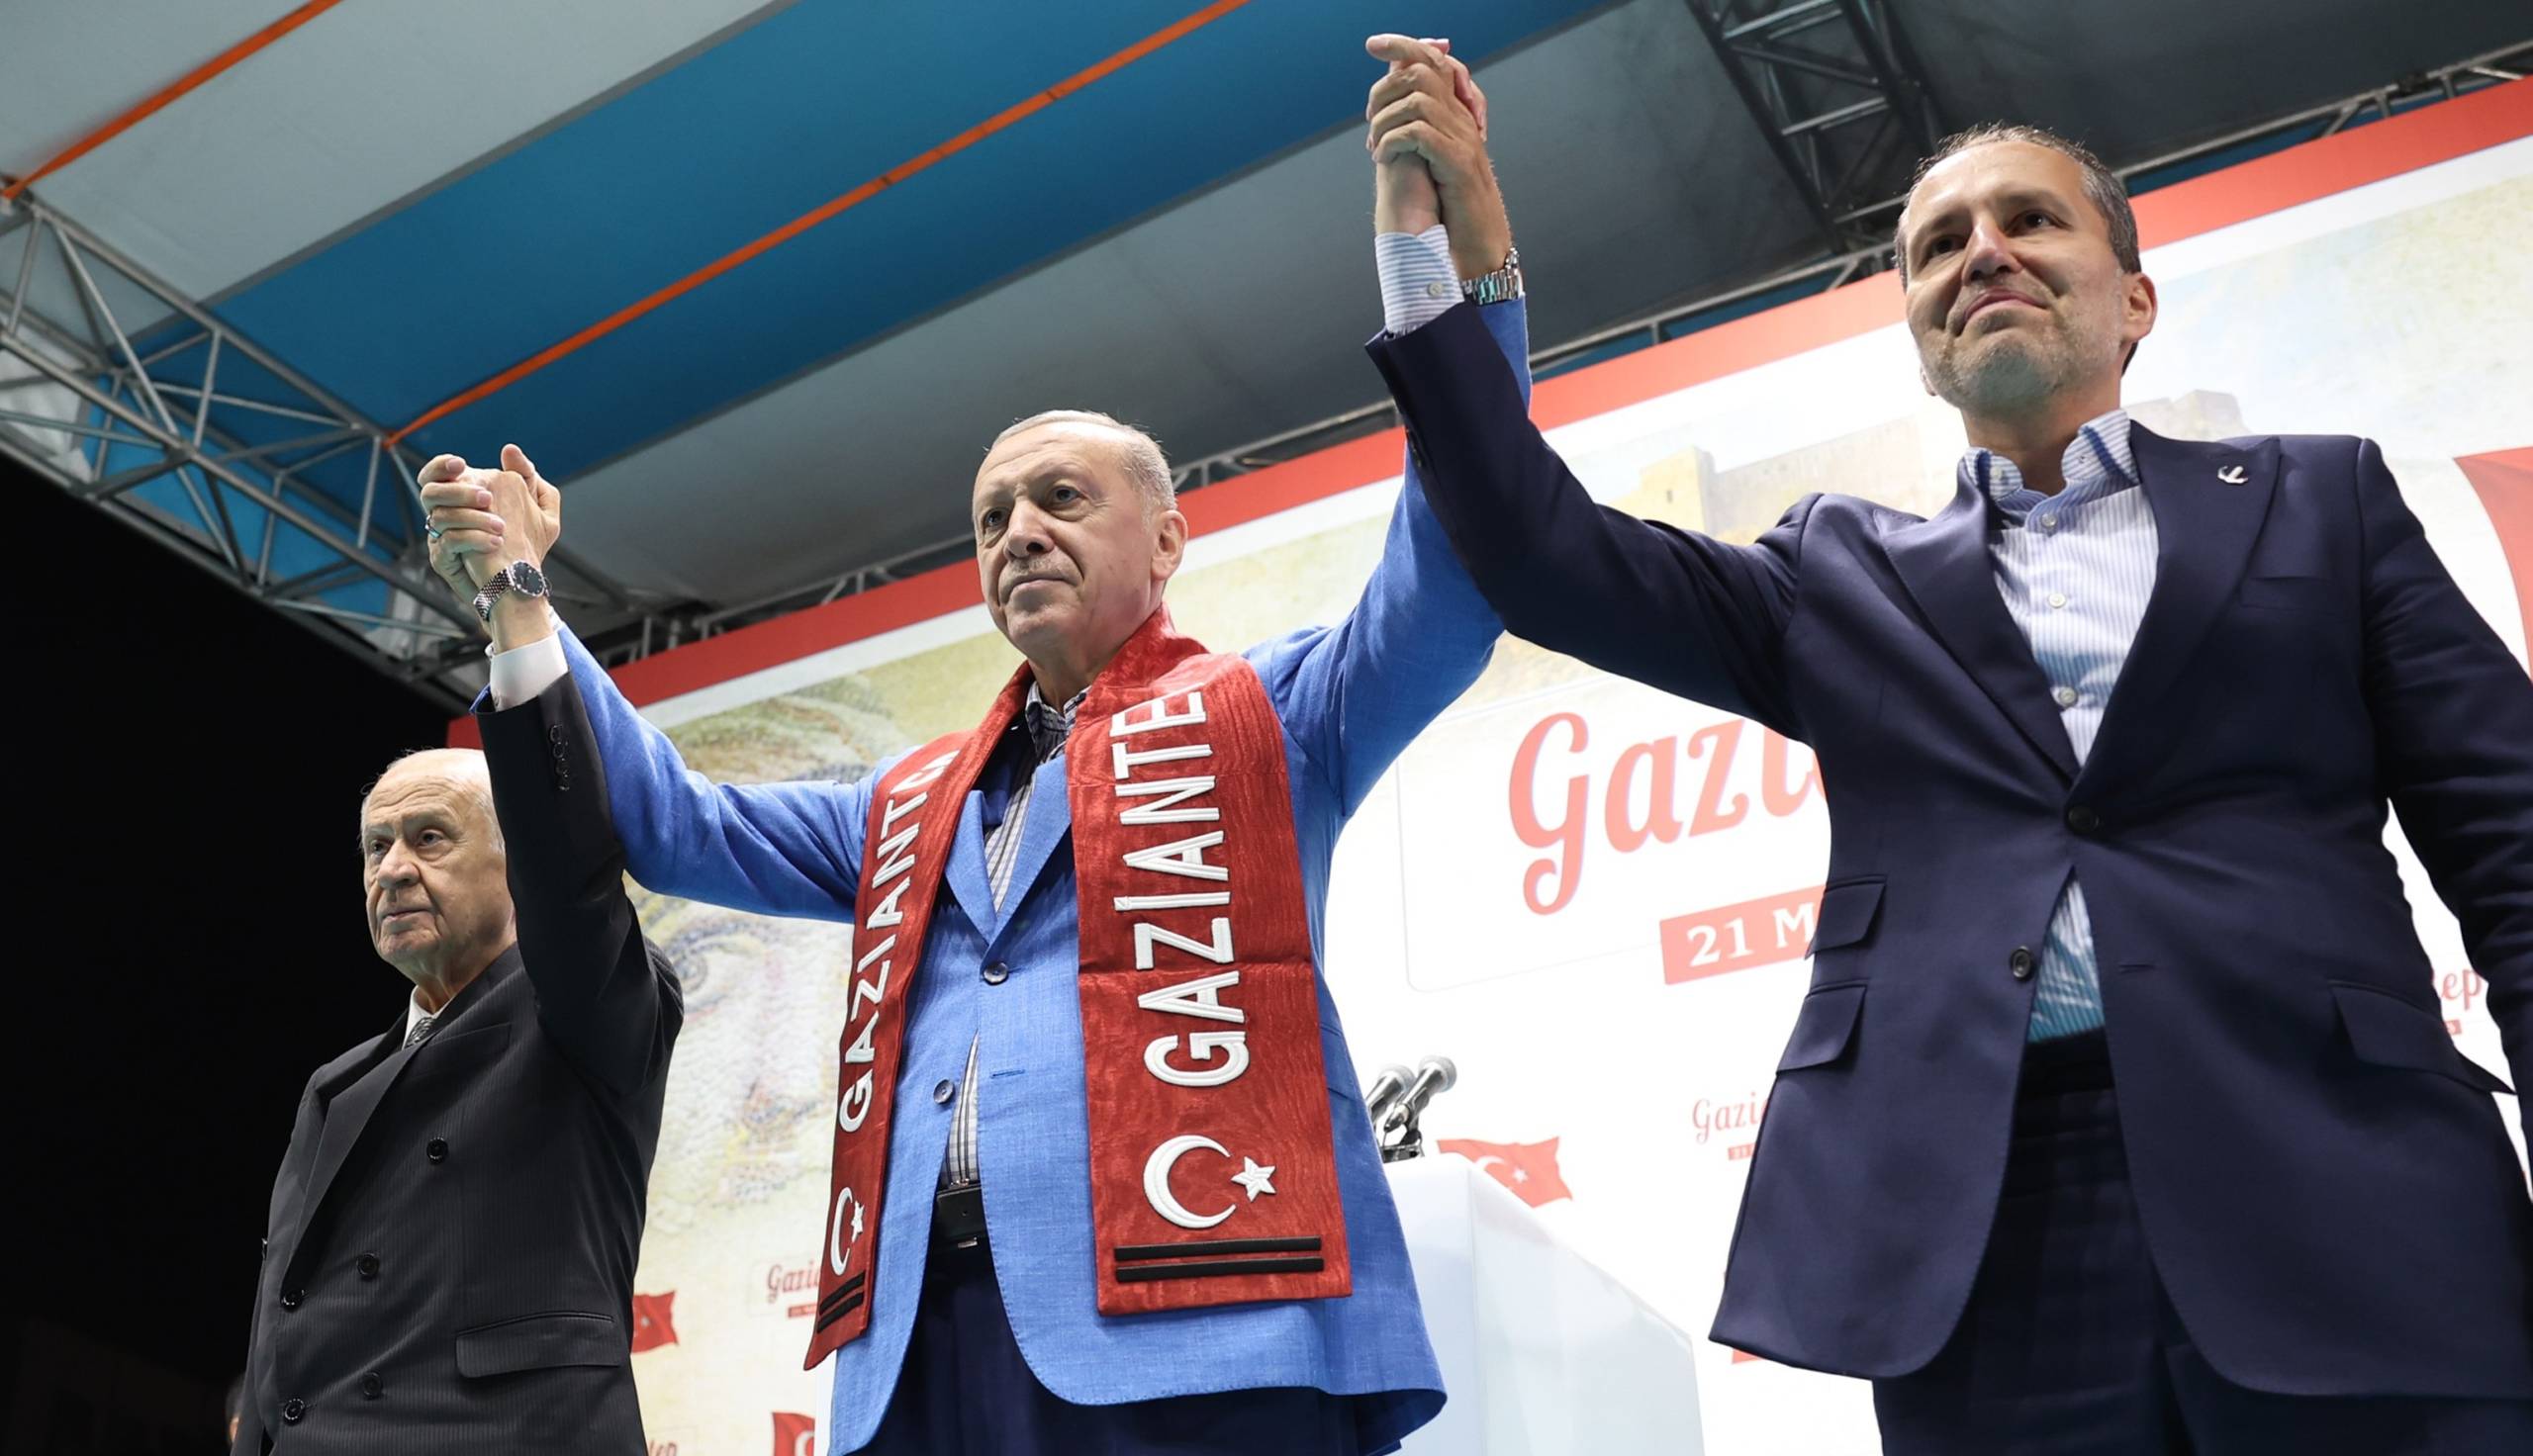 Cumhurbaşkanı Erdoğan'ı Gaziantep'te 100 bin kişi karşıladı